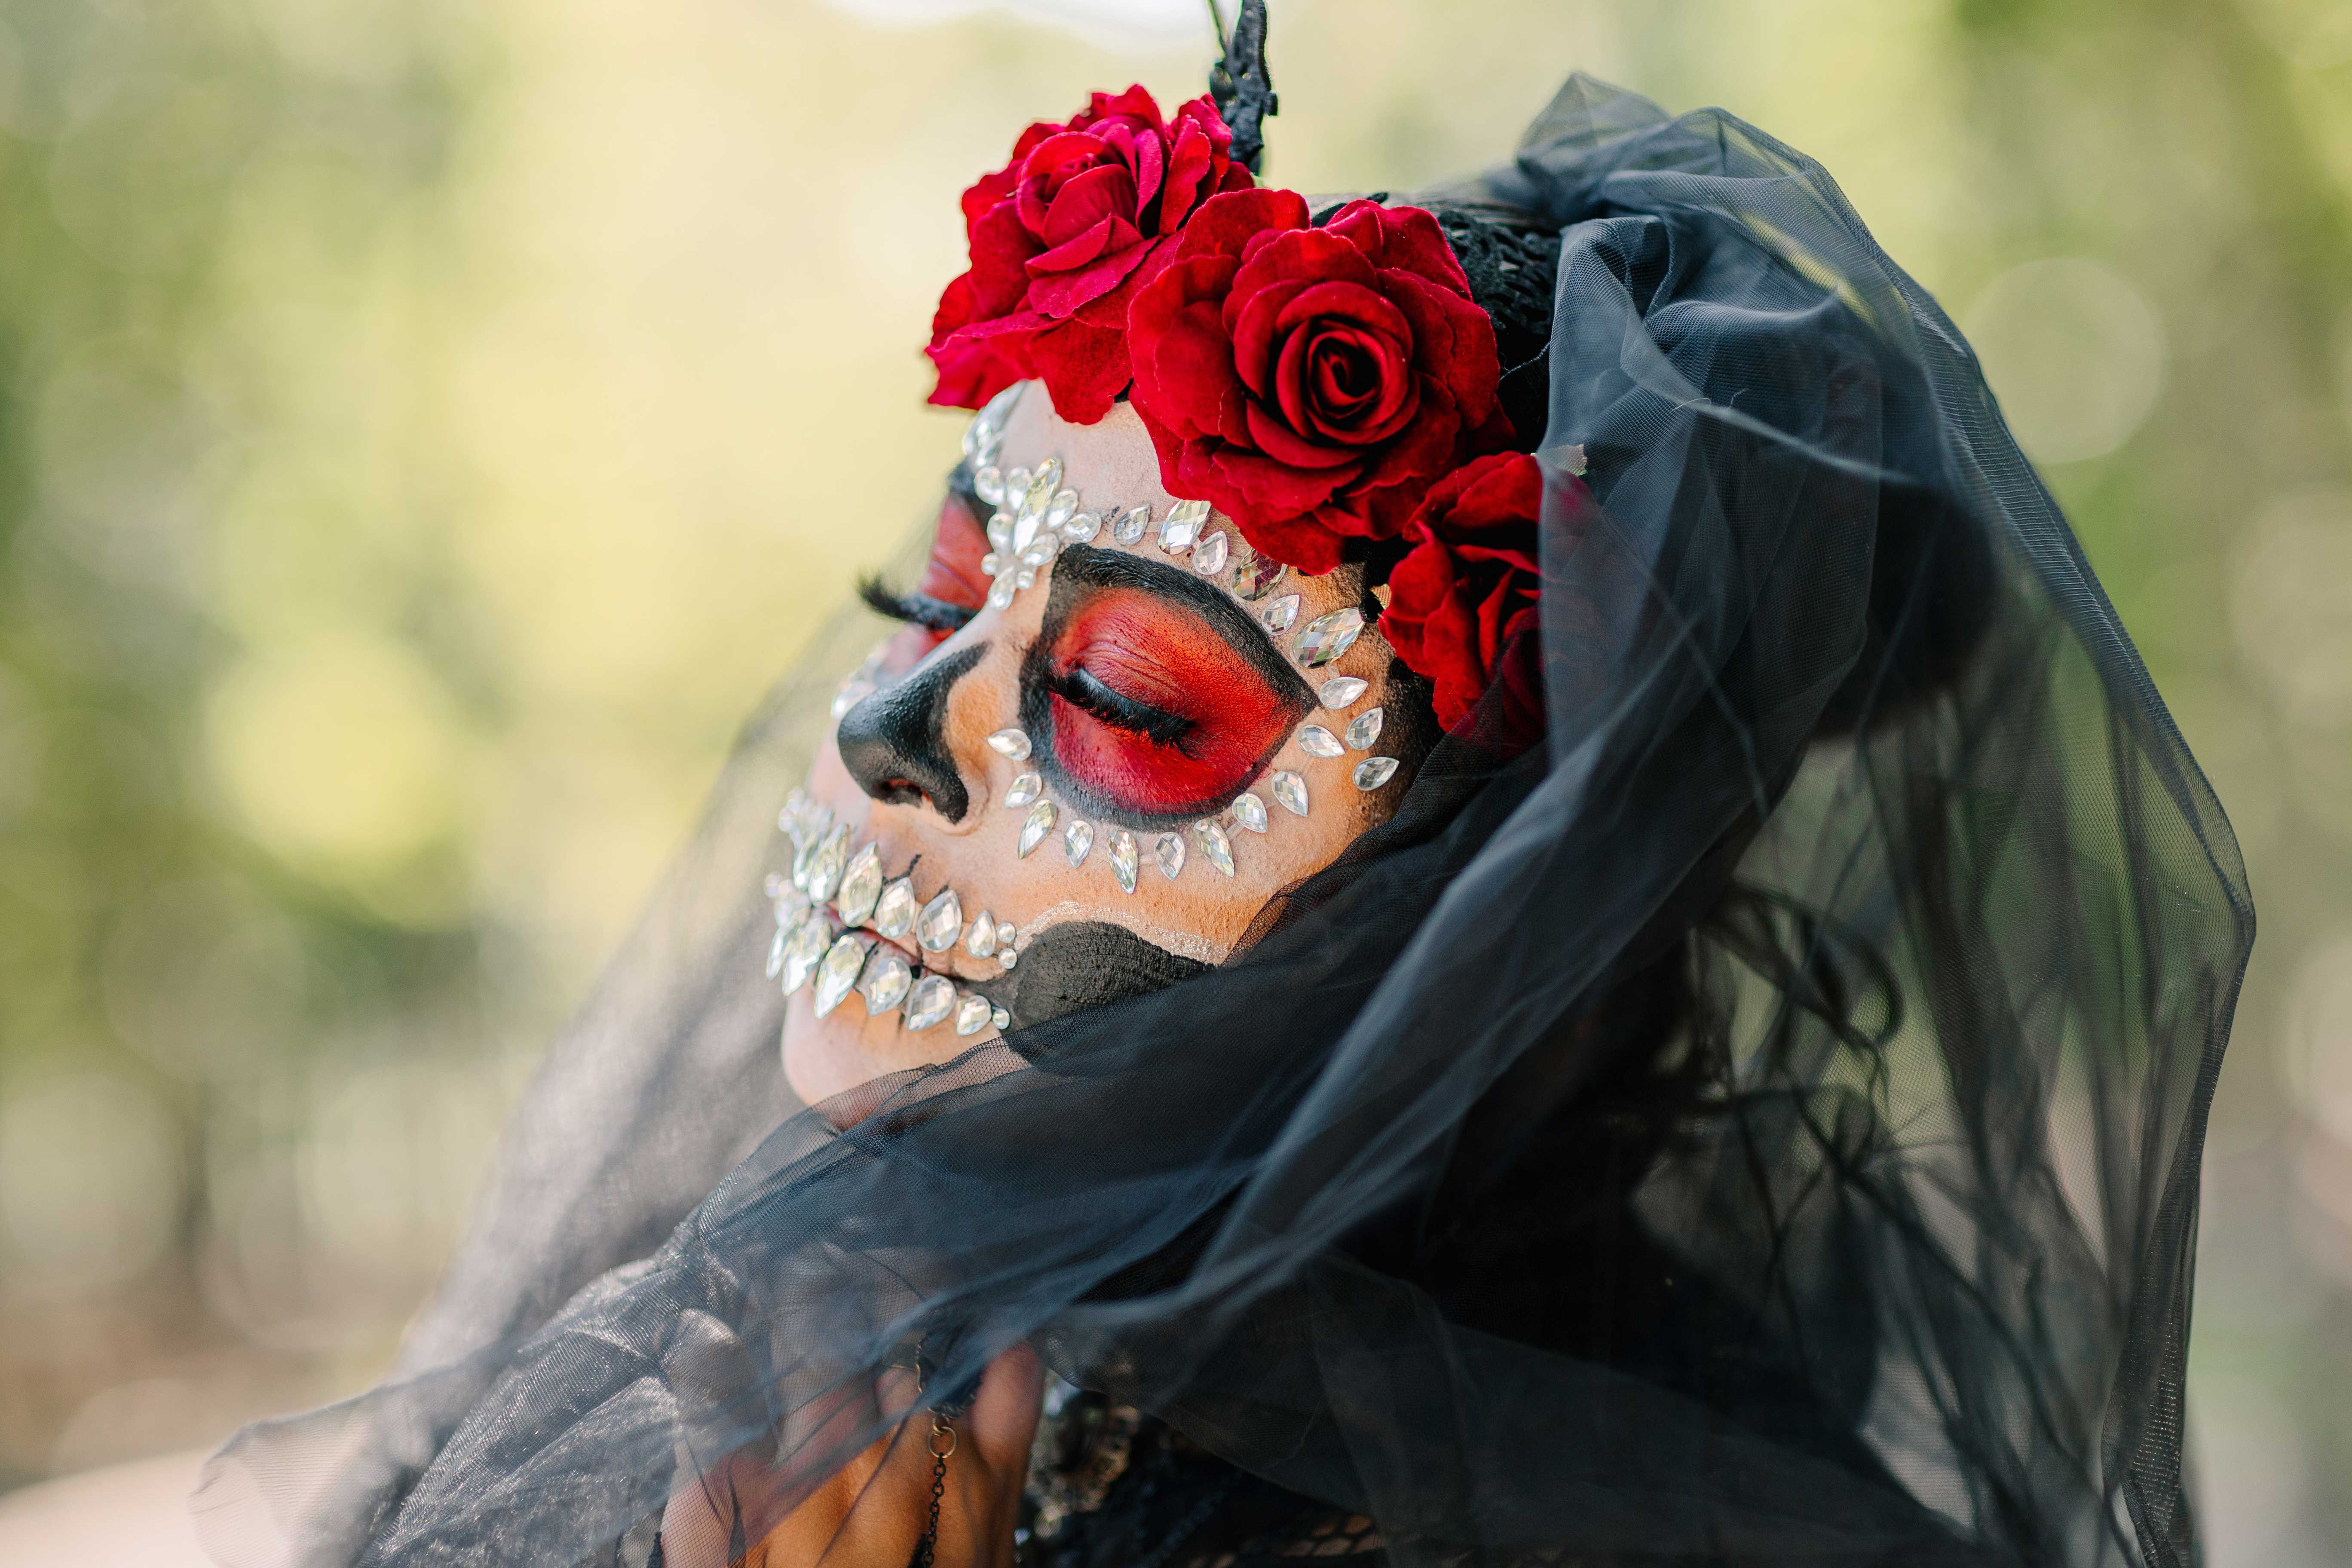 Top Day of the Dead Facts to Know - Día de los Muertos History